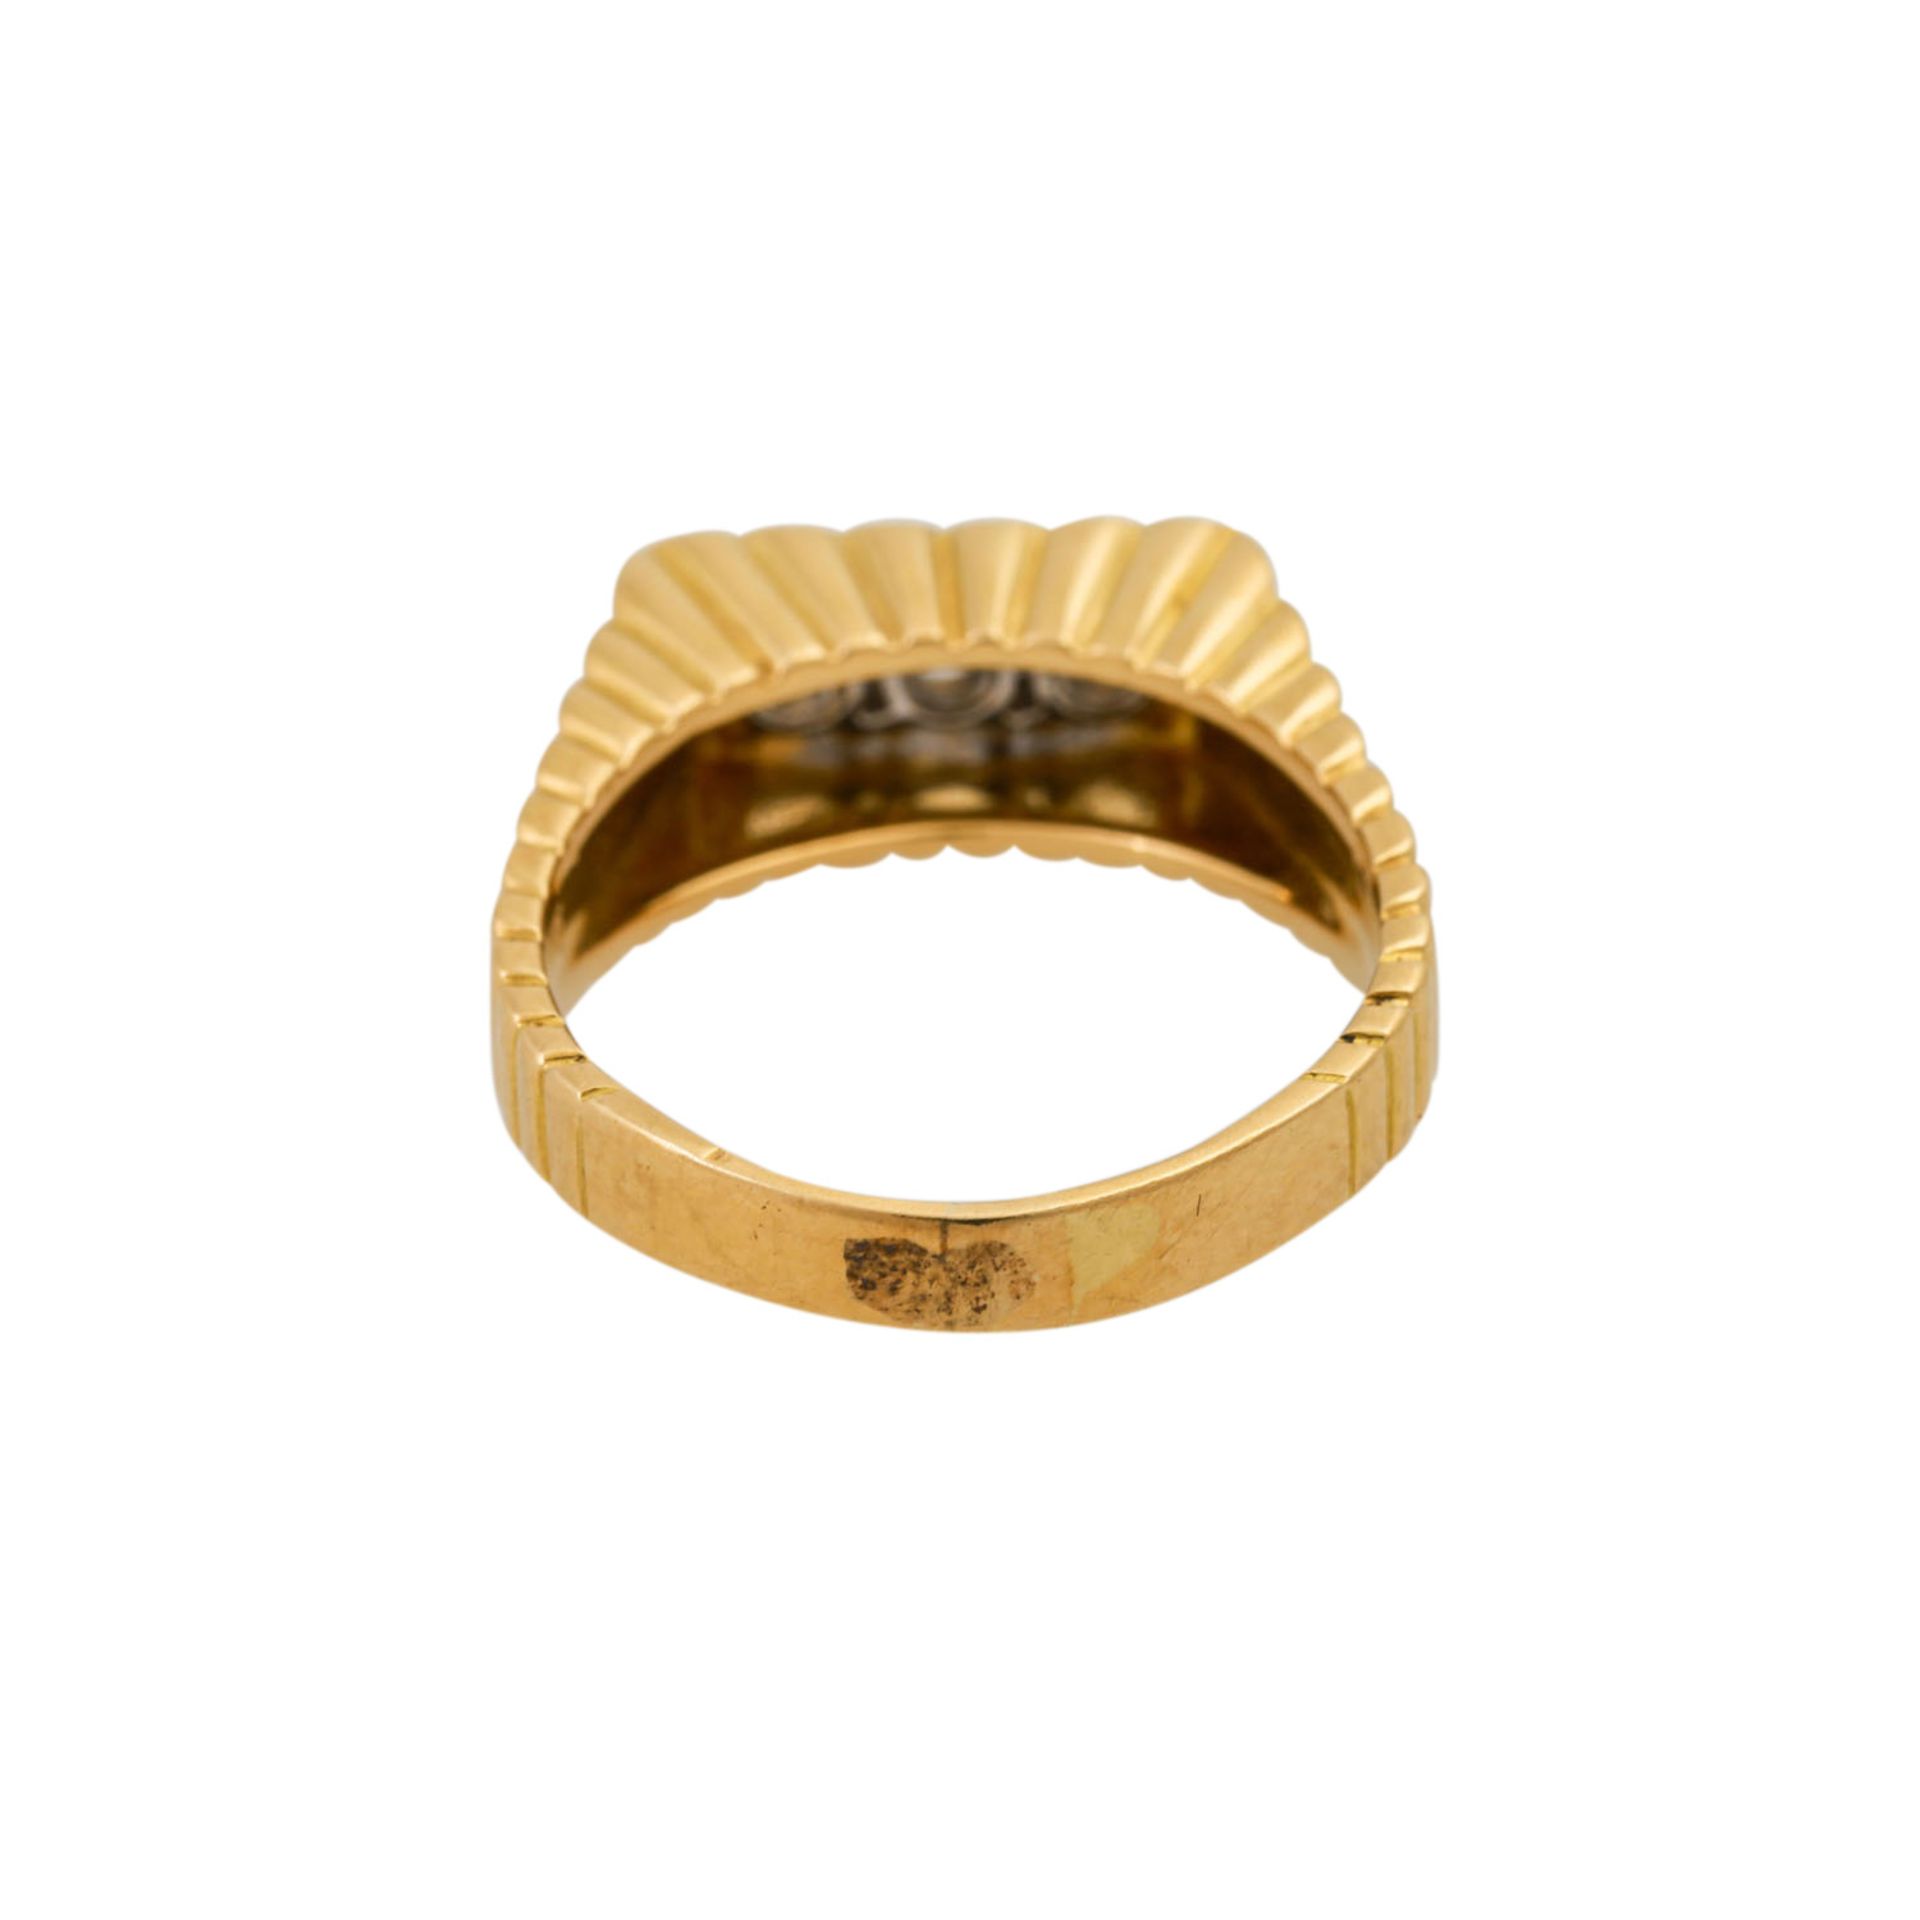 LAUDIER Ring mit 3 Brillanten von zus. ca. 0,6 ct (punziert) - Bild 4 aus 4